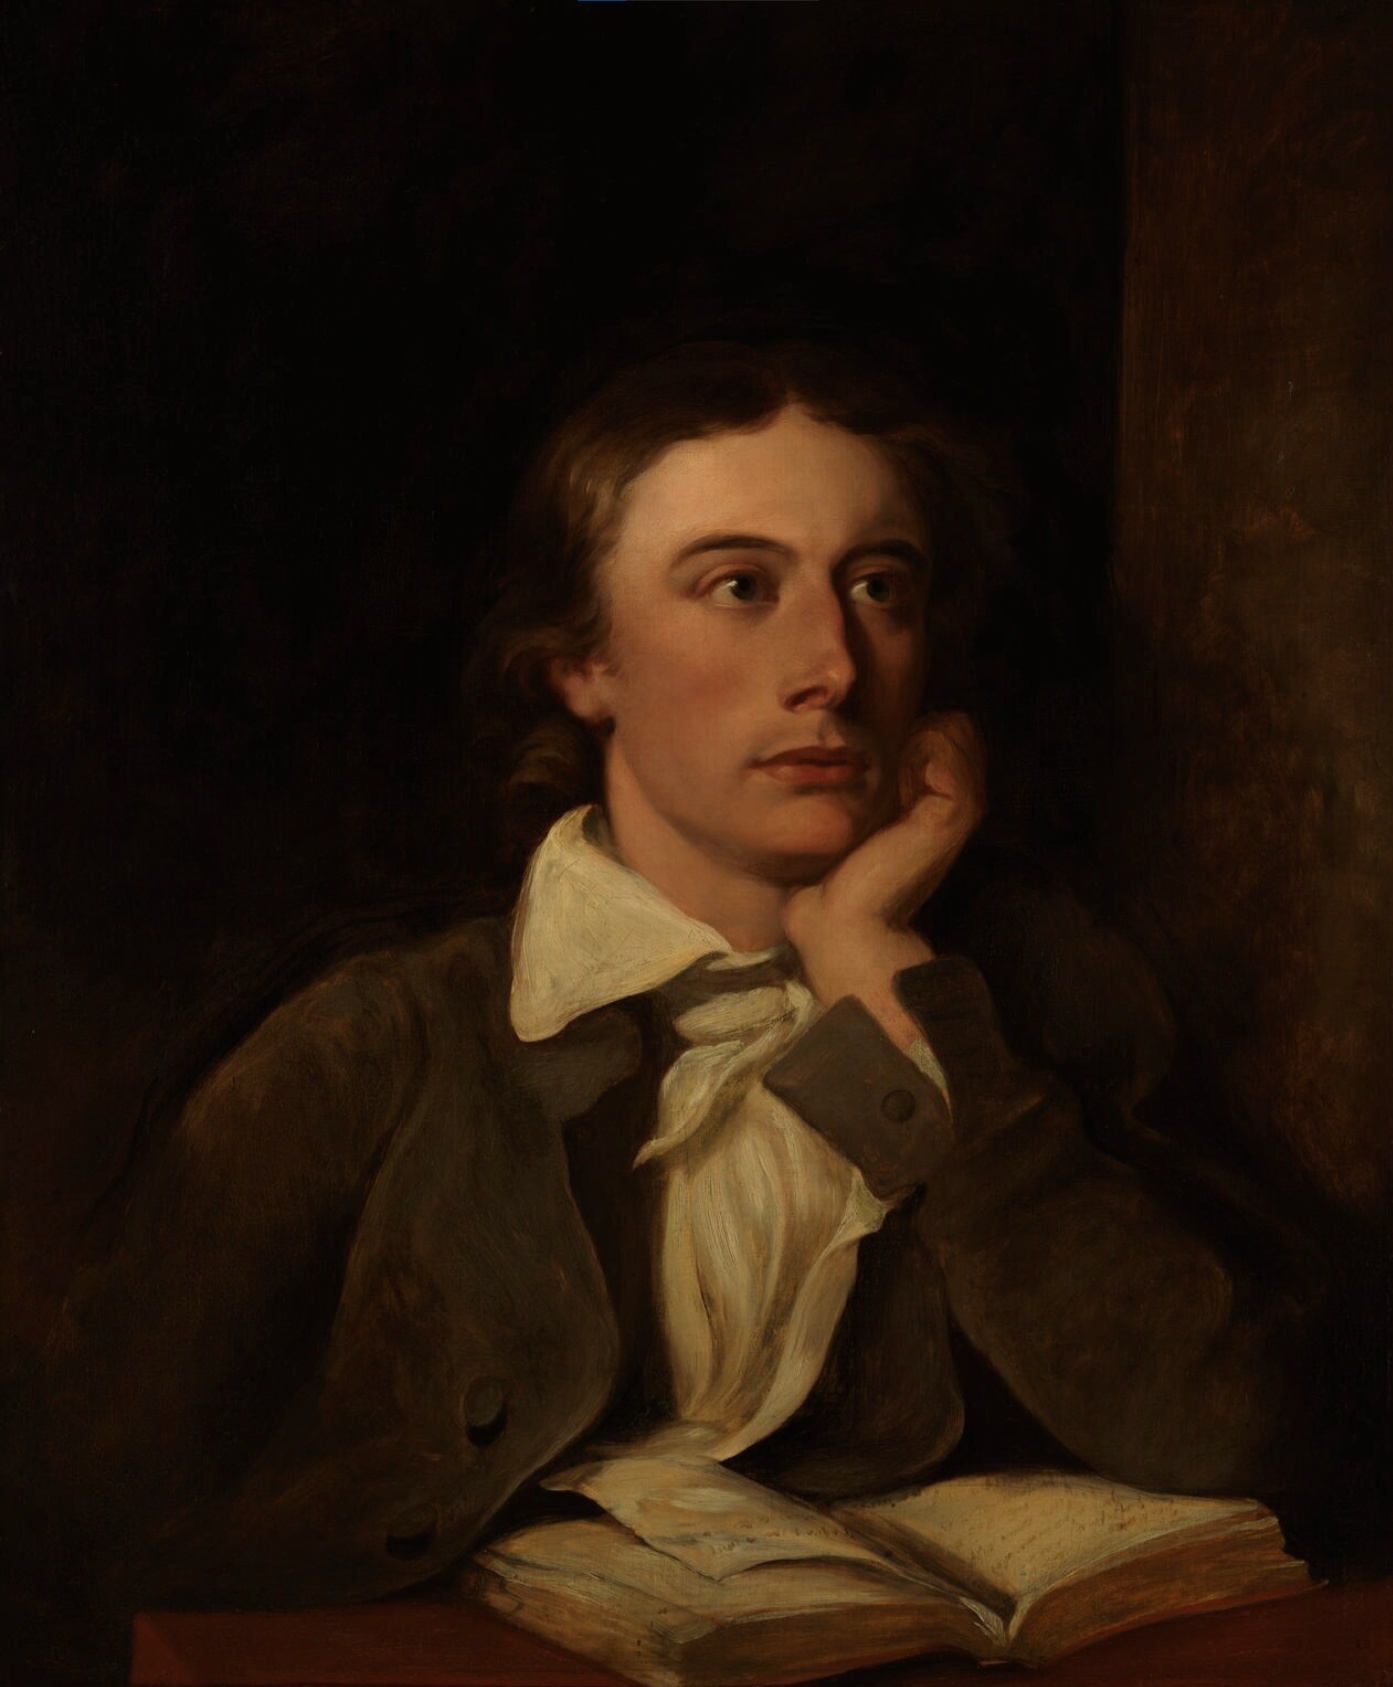 auteur John Keats de la citation Saison de brumes et fécondité moelleuse, étroite de la poitrine du soleil mûrissant.